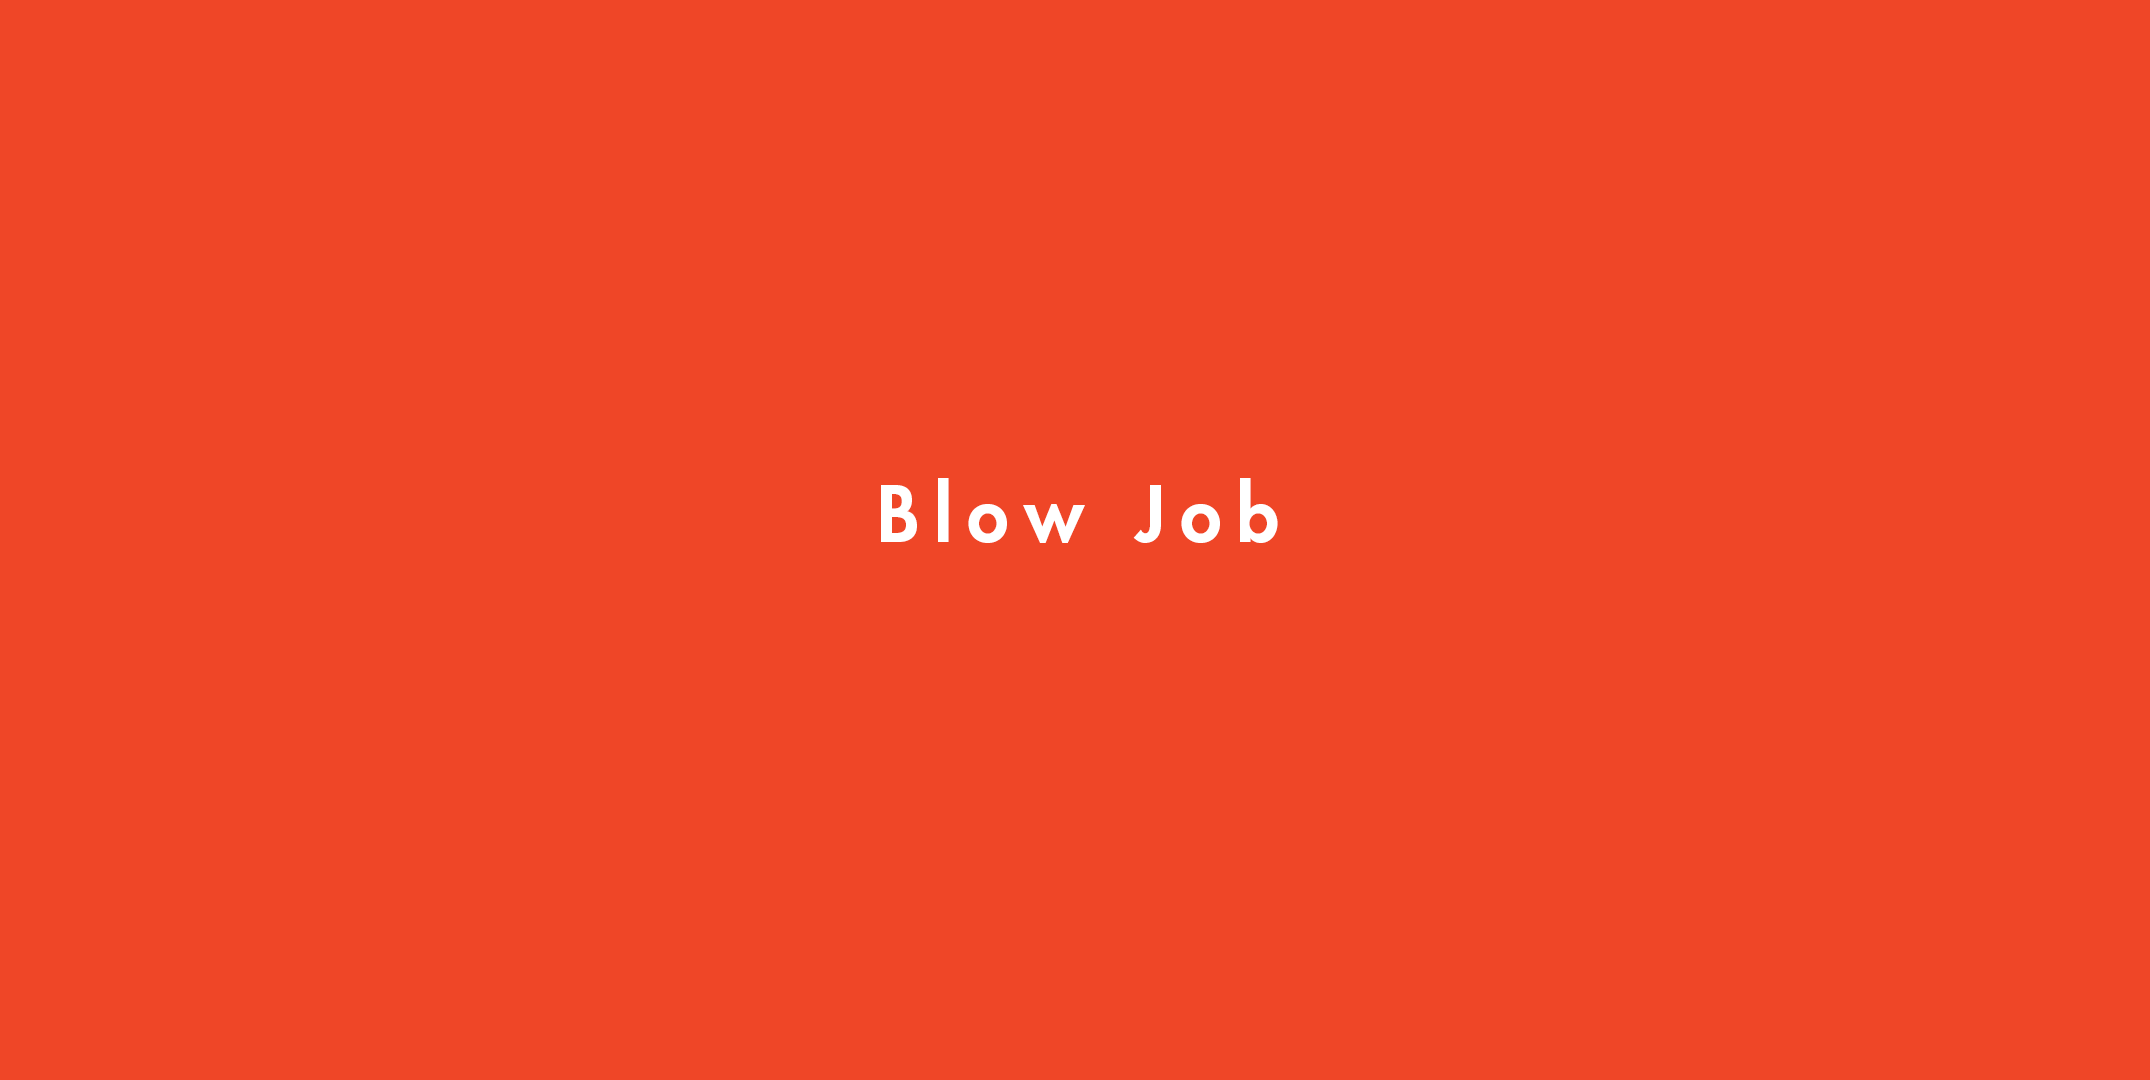 Blow Job Definition picture